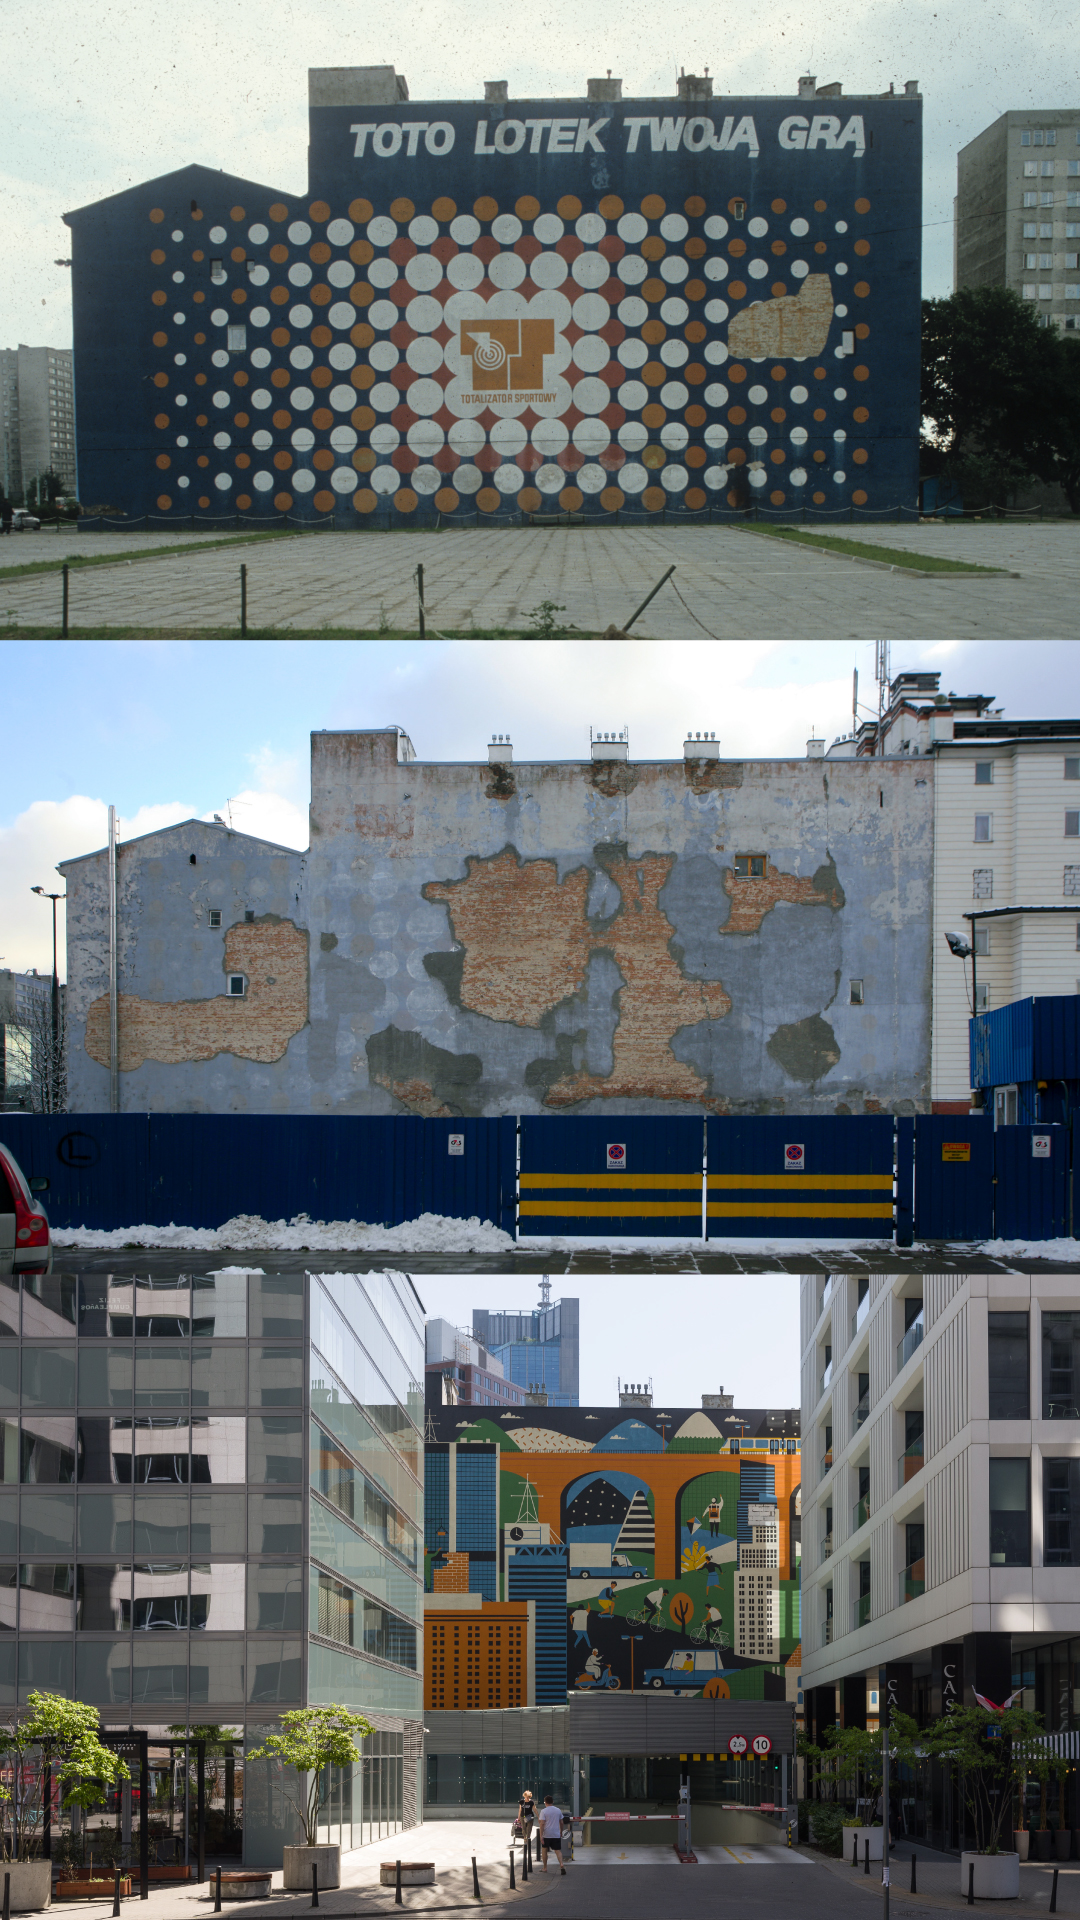 Trzy zdjęcia tej samej ściany. Pierwszy archiwalny przedstawia malowaną reklamę Totolotka. Drugi ślady farby po tej reklamy. Trzeci nowy mural artystyczny.